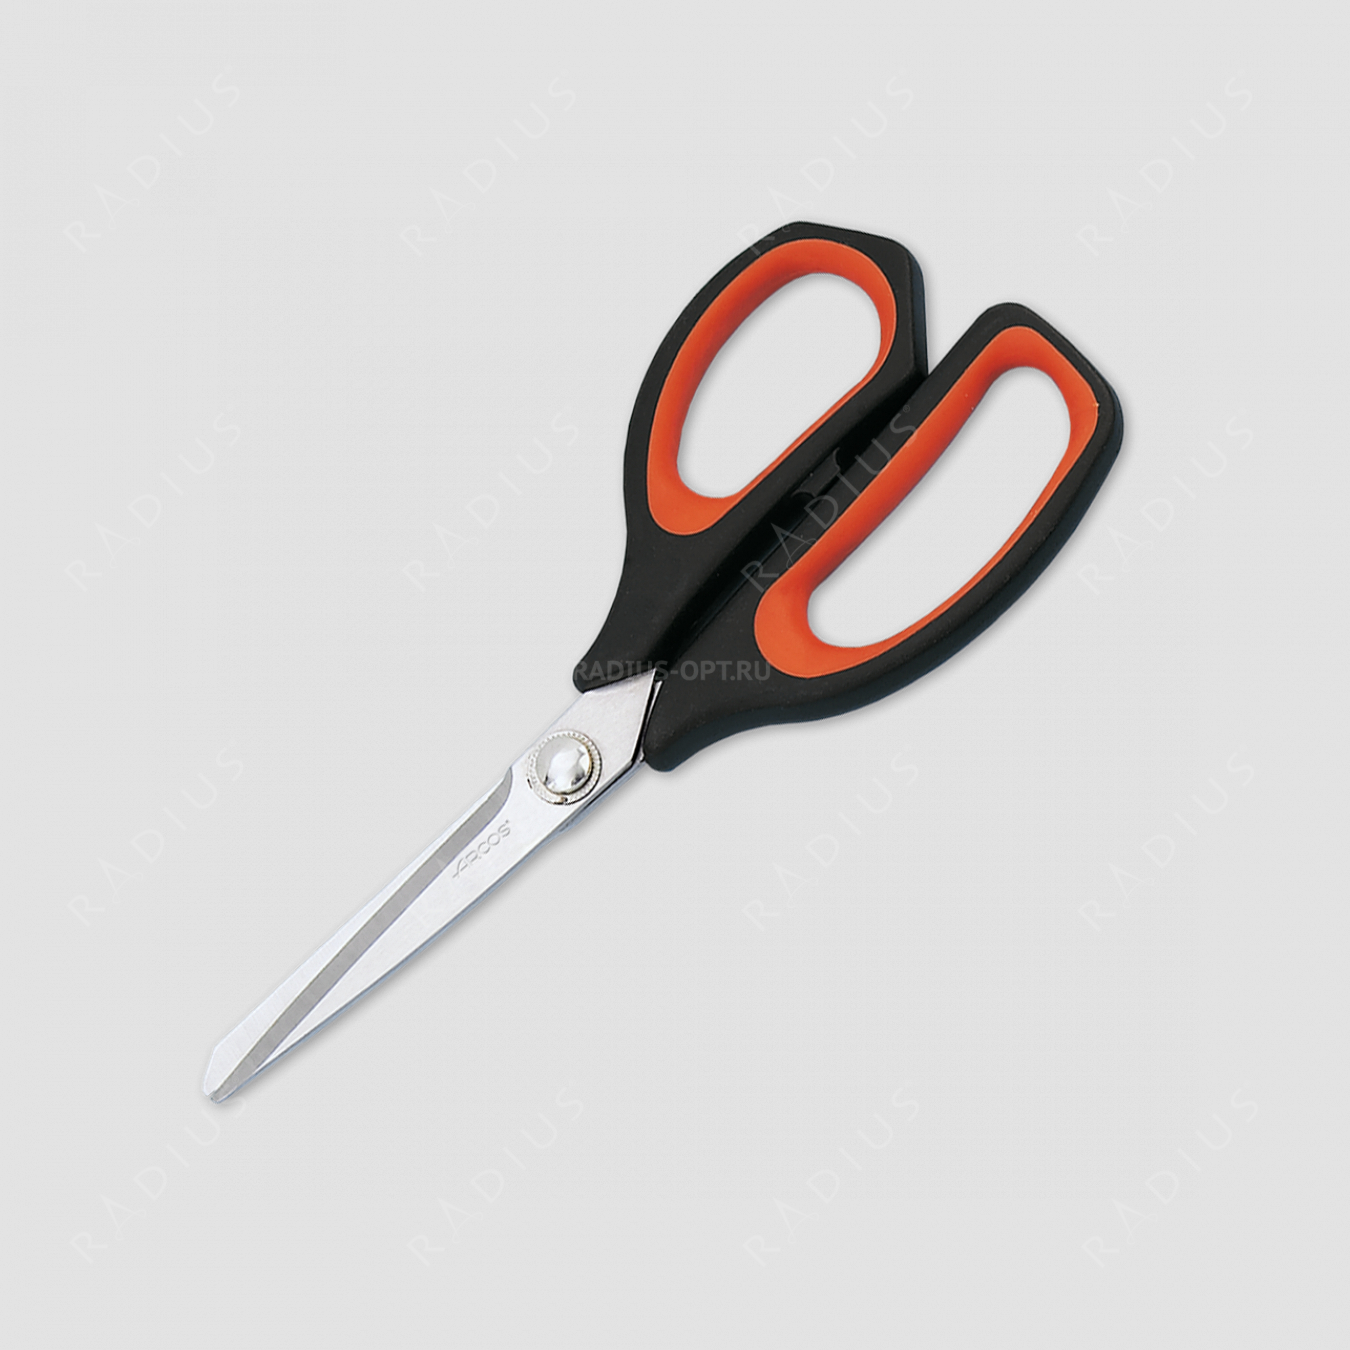 Ножницы кухонные 21,5 см, серия Scissors, ARCOS, Испания